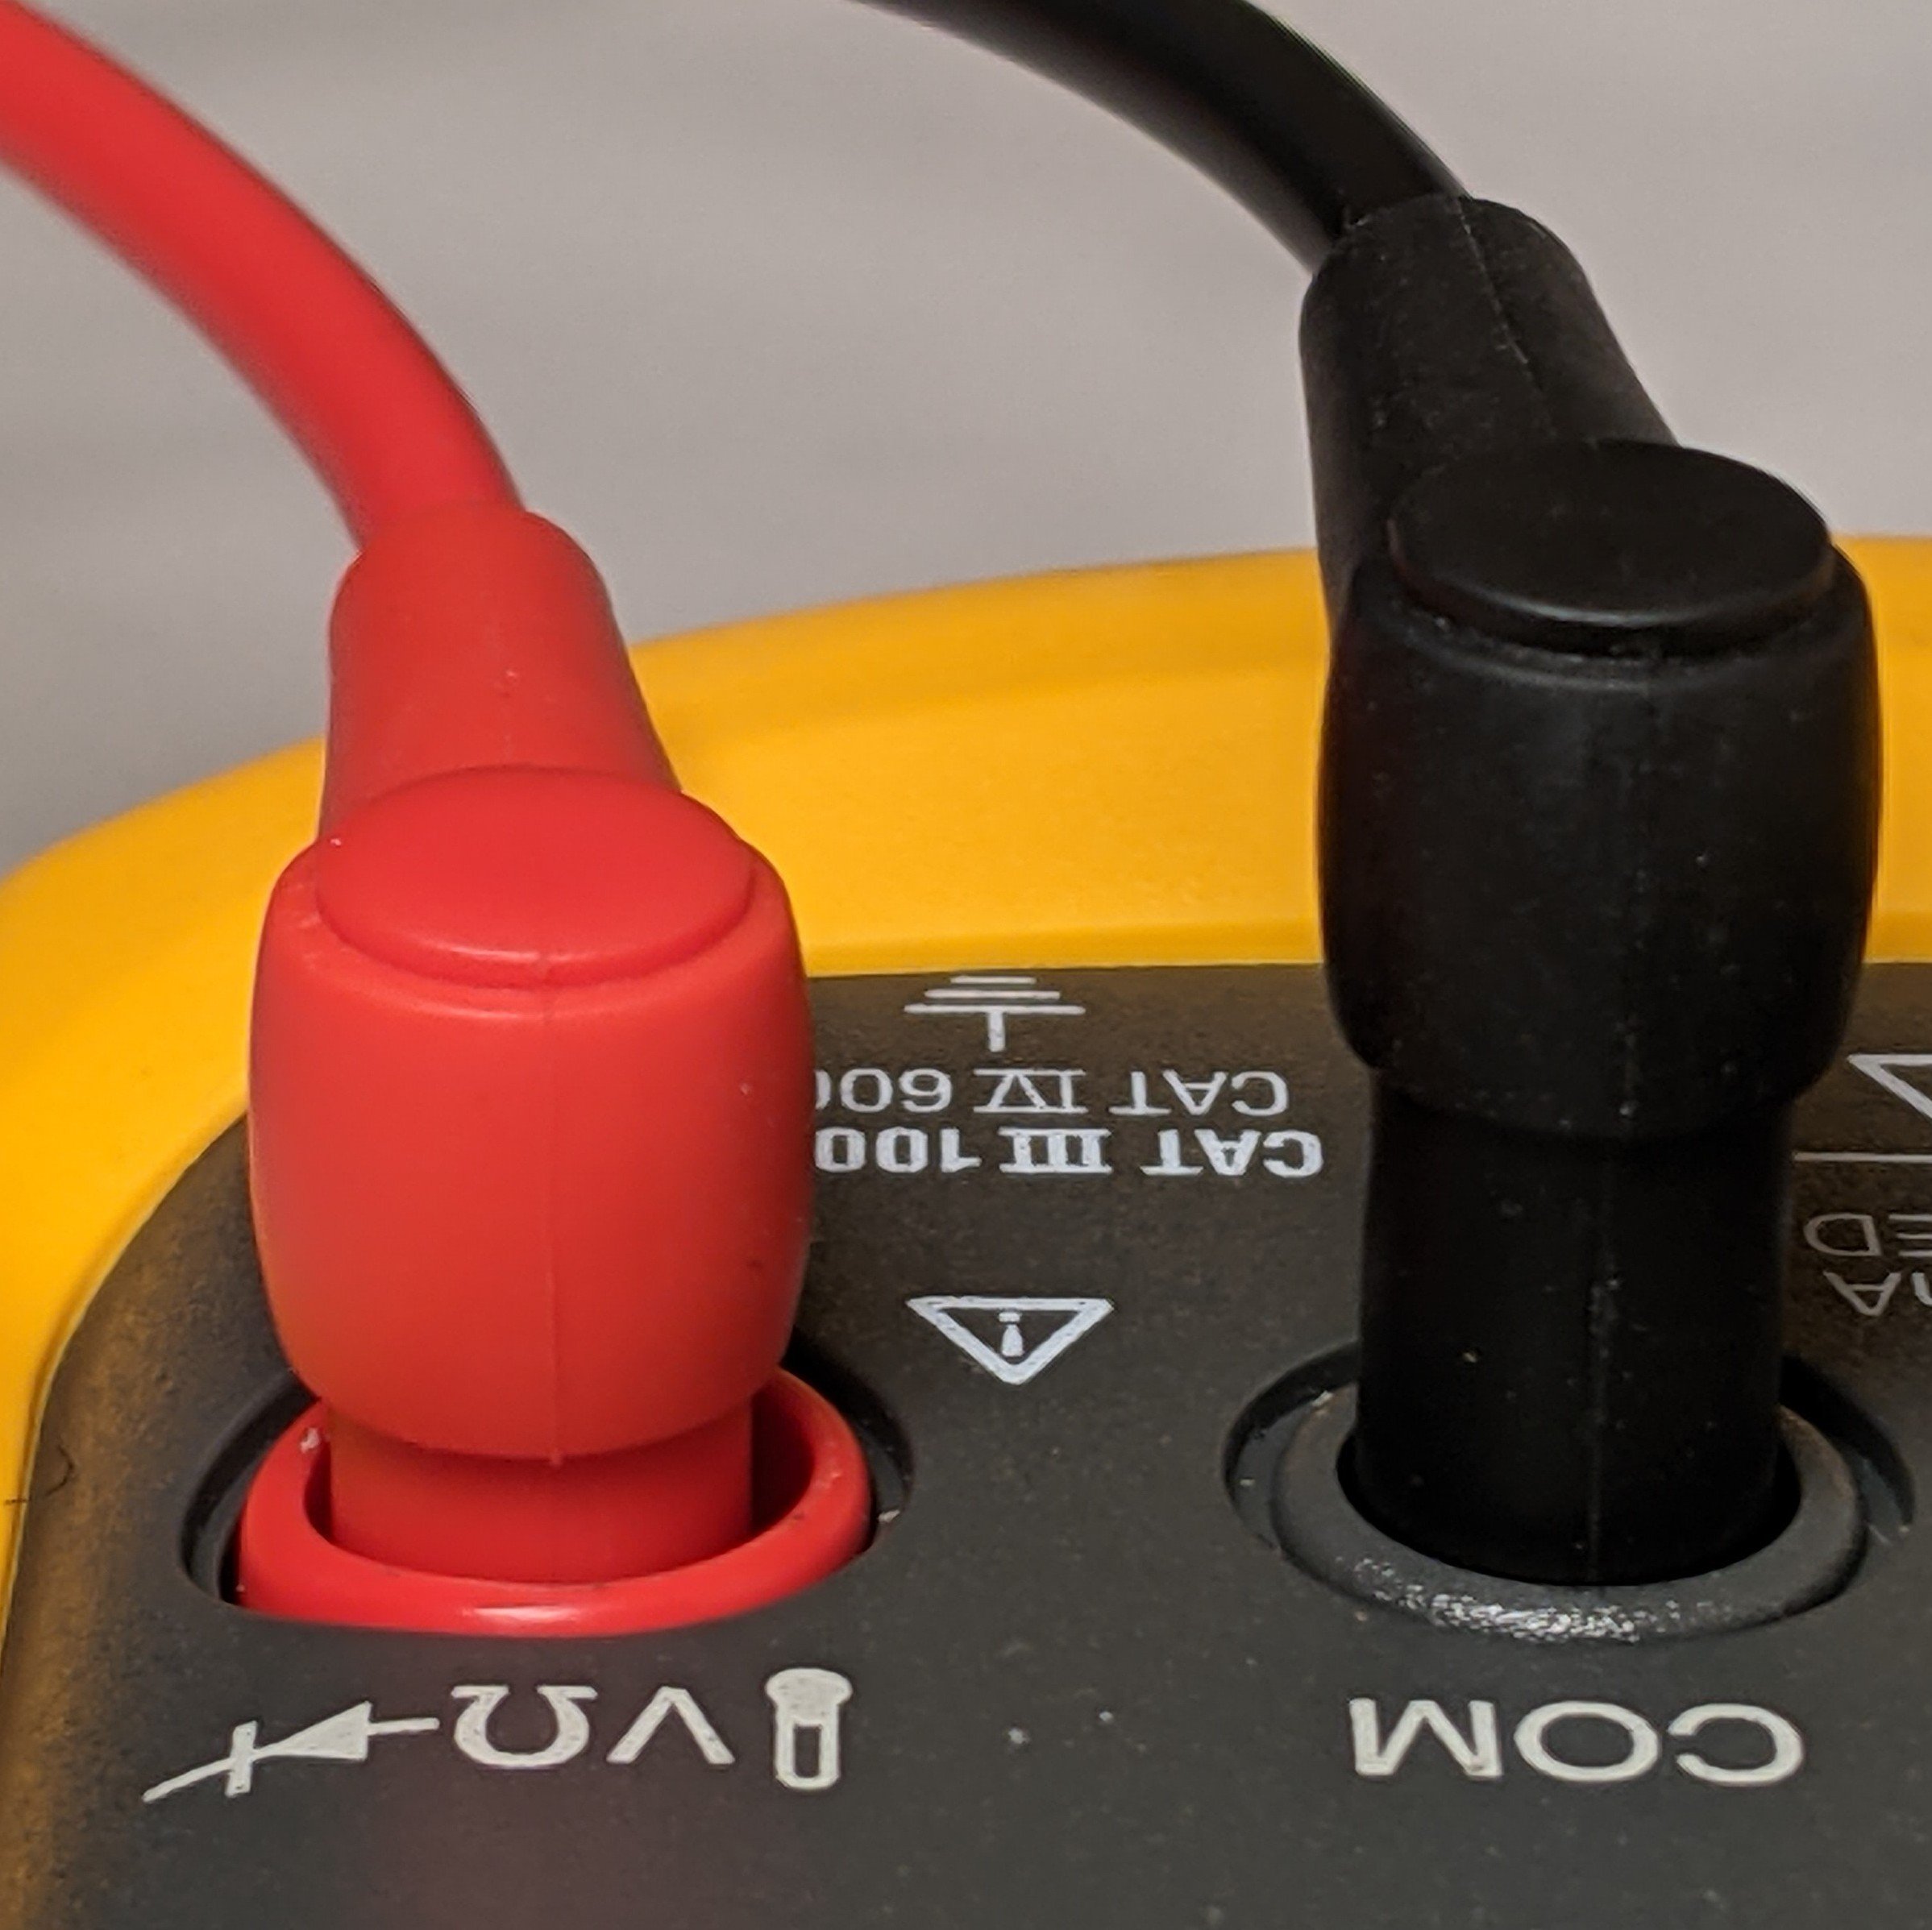 Bezpečnostní upozornění k multimetrům Fluke řady 8xV – Zapojení červeného měřicího kabelu při povytaženém černém měřicím kabelu